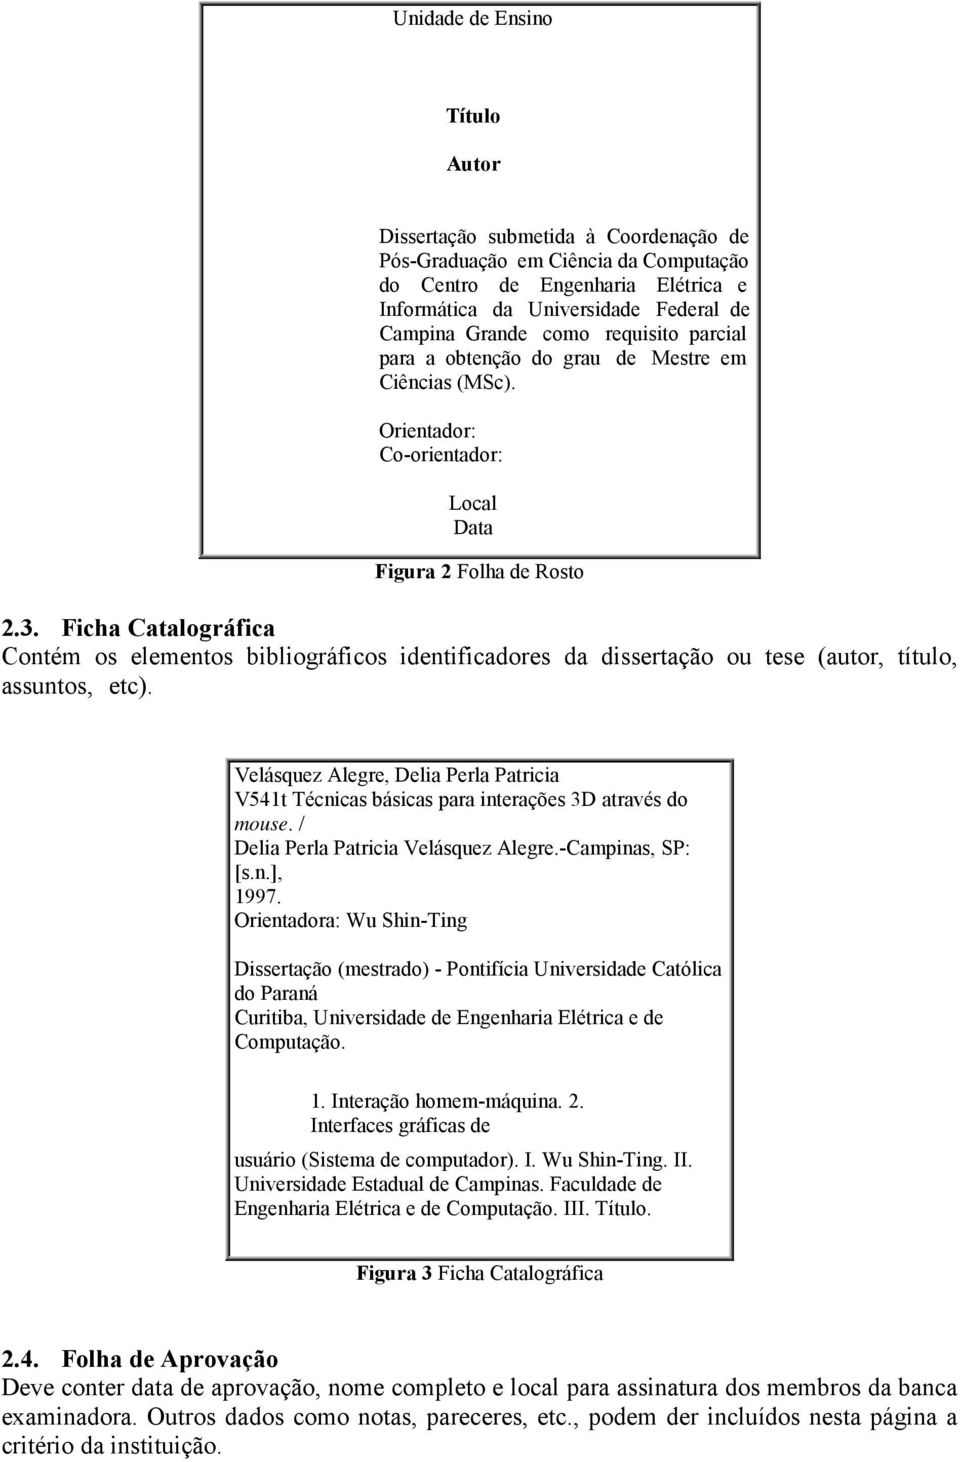 Ficha Catalográfica Contém os elementos bibliográficos identificadores da dissertação ou tese (autor, título, assuntos, etc).